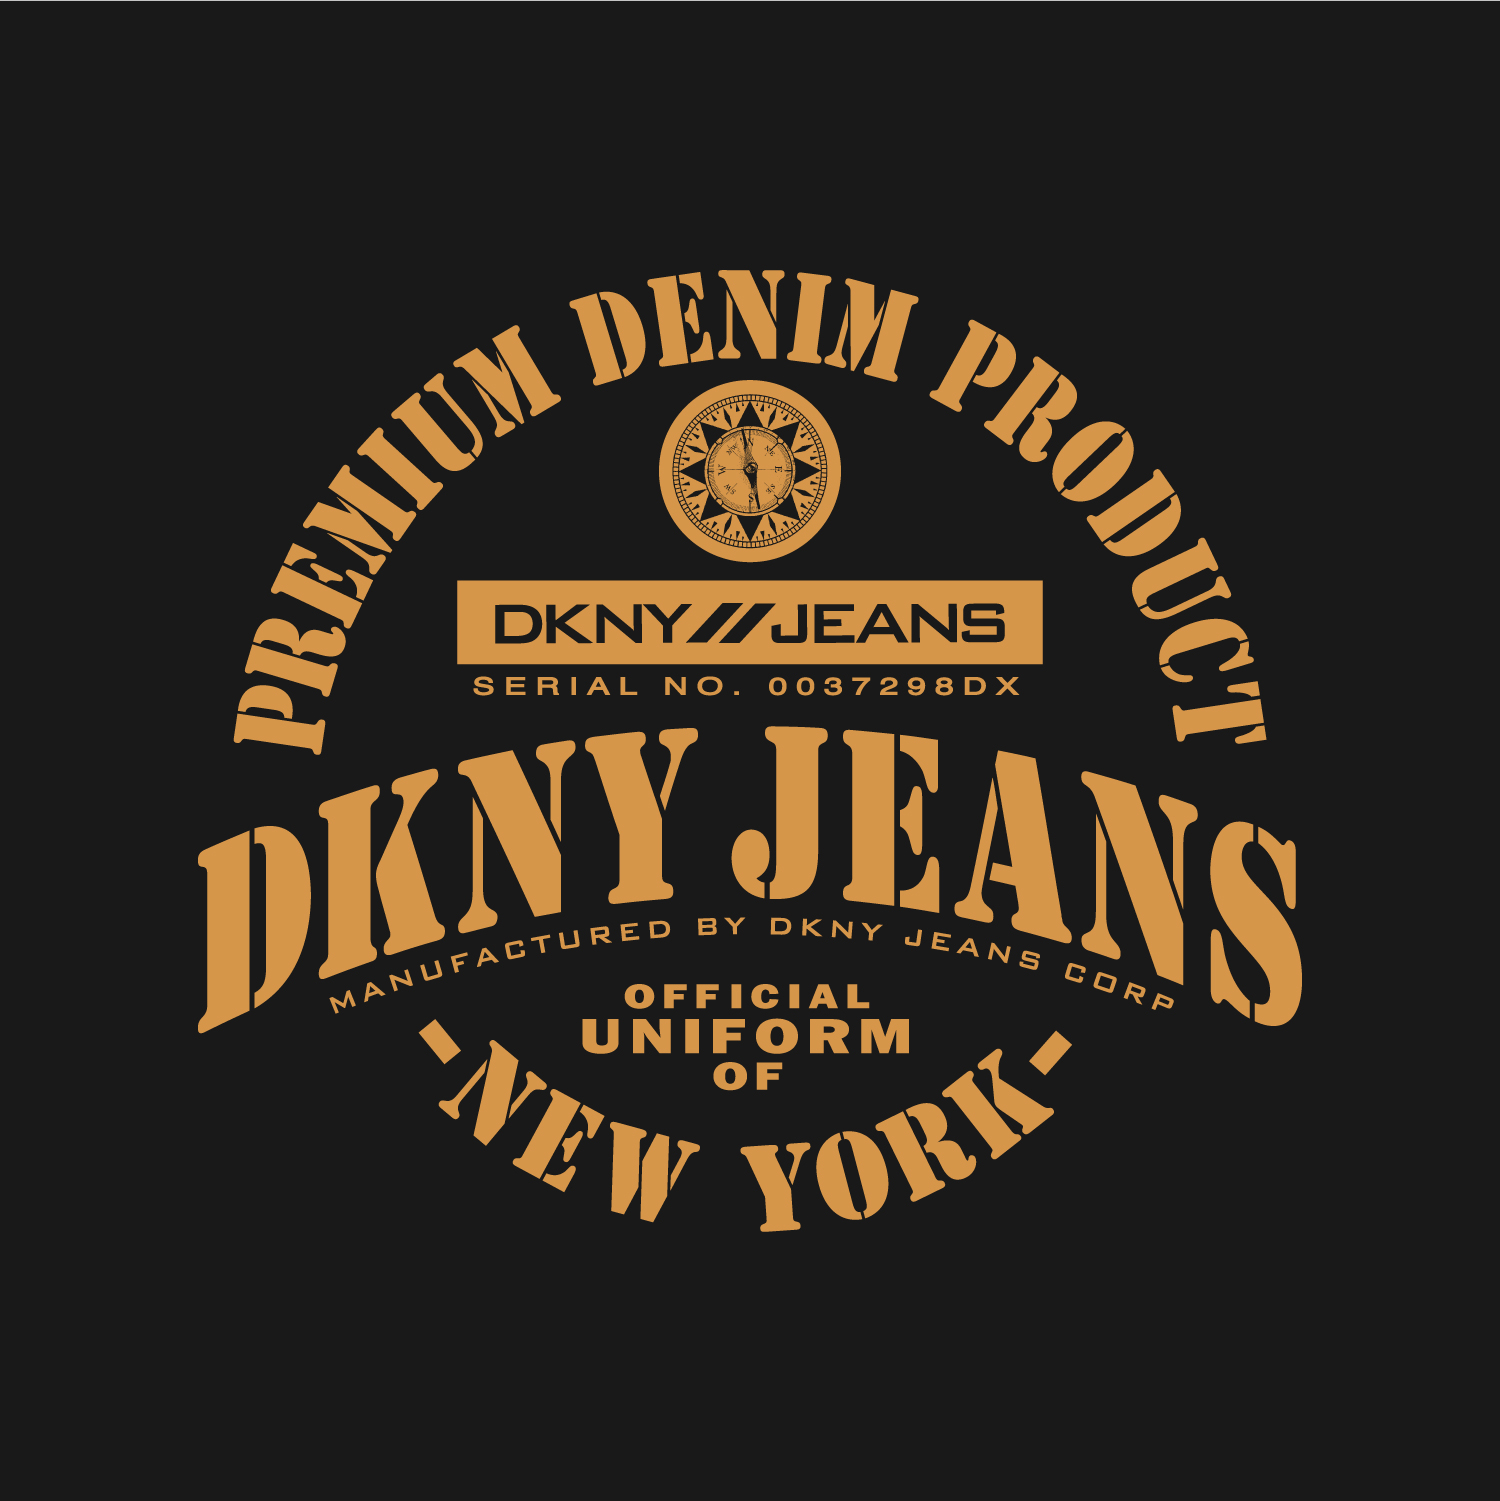 Dkny Logos  Dkny, Logos, New york logo